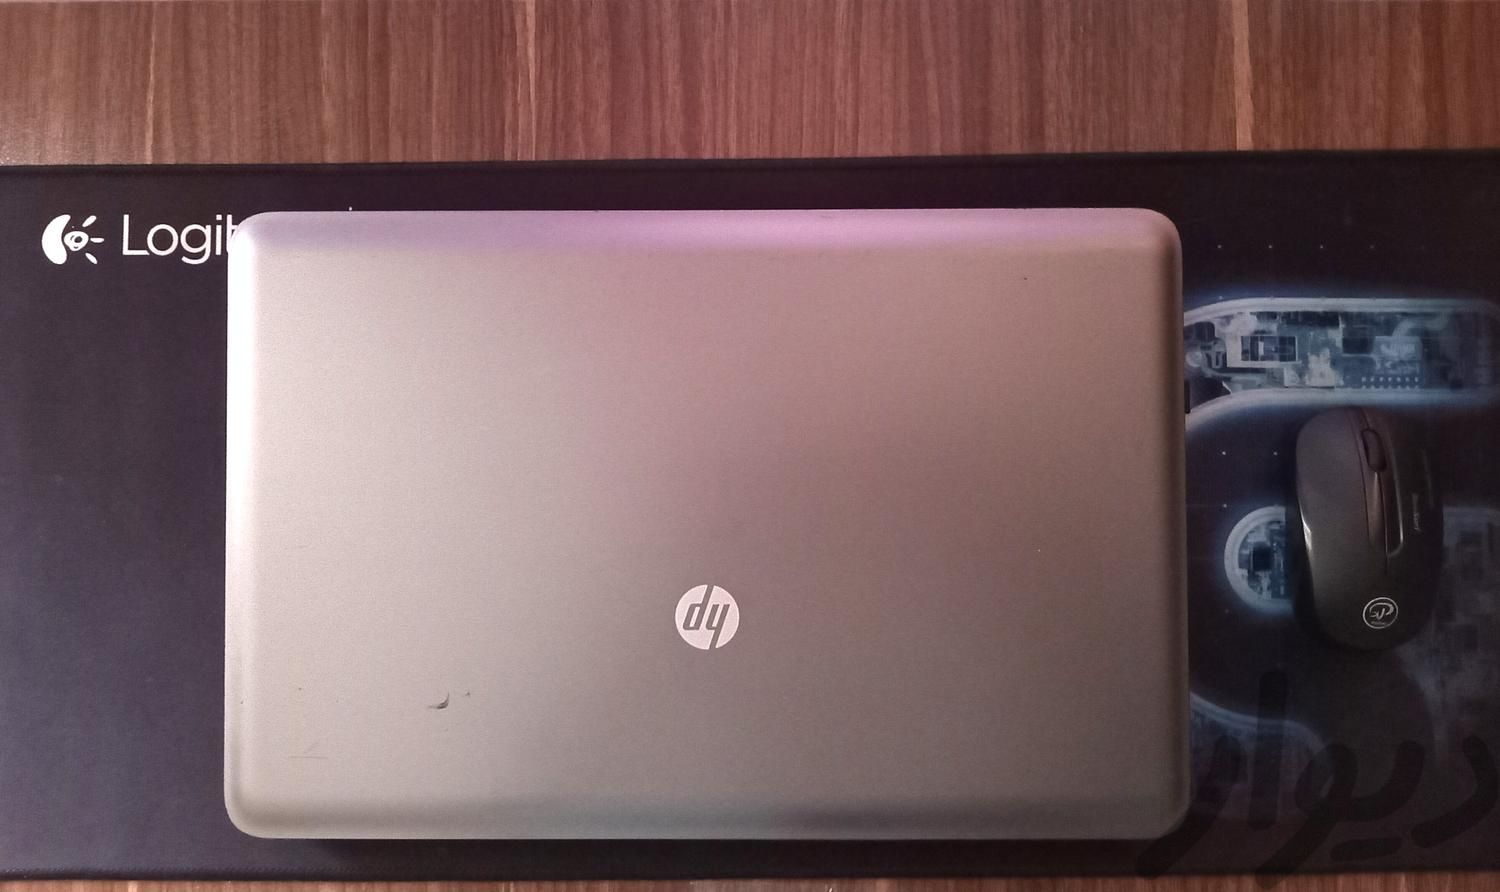 لپ تاپ 15 اینچ اچ پی HP مدل i3 650|رایانه همراه|قم, پلیس|دیوار